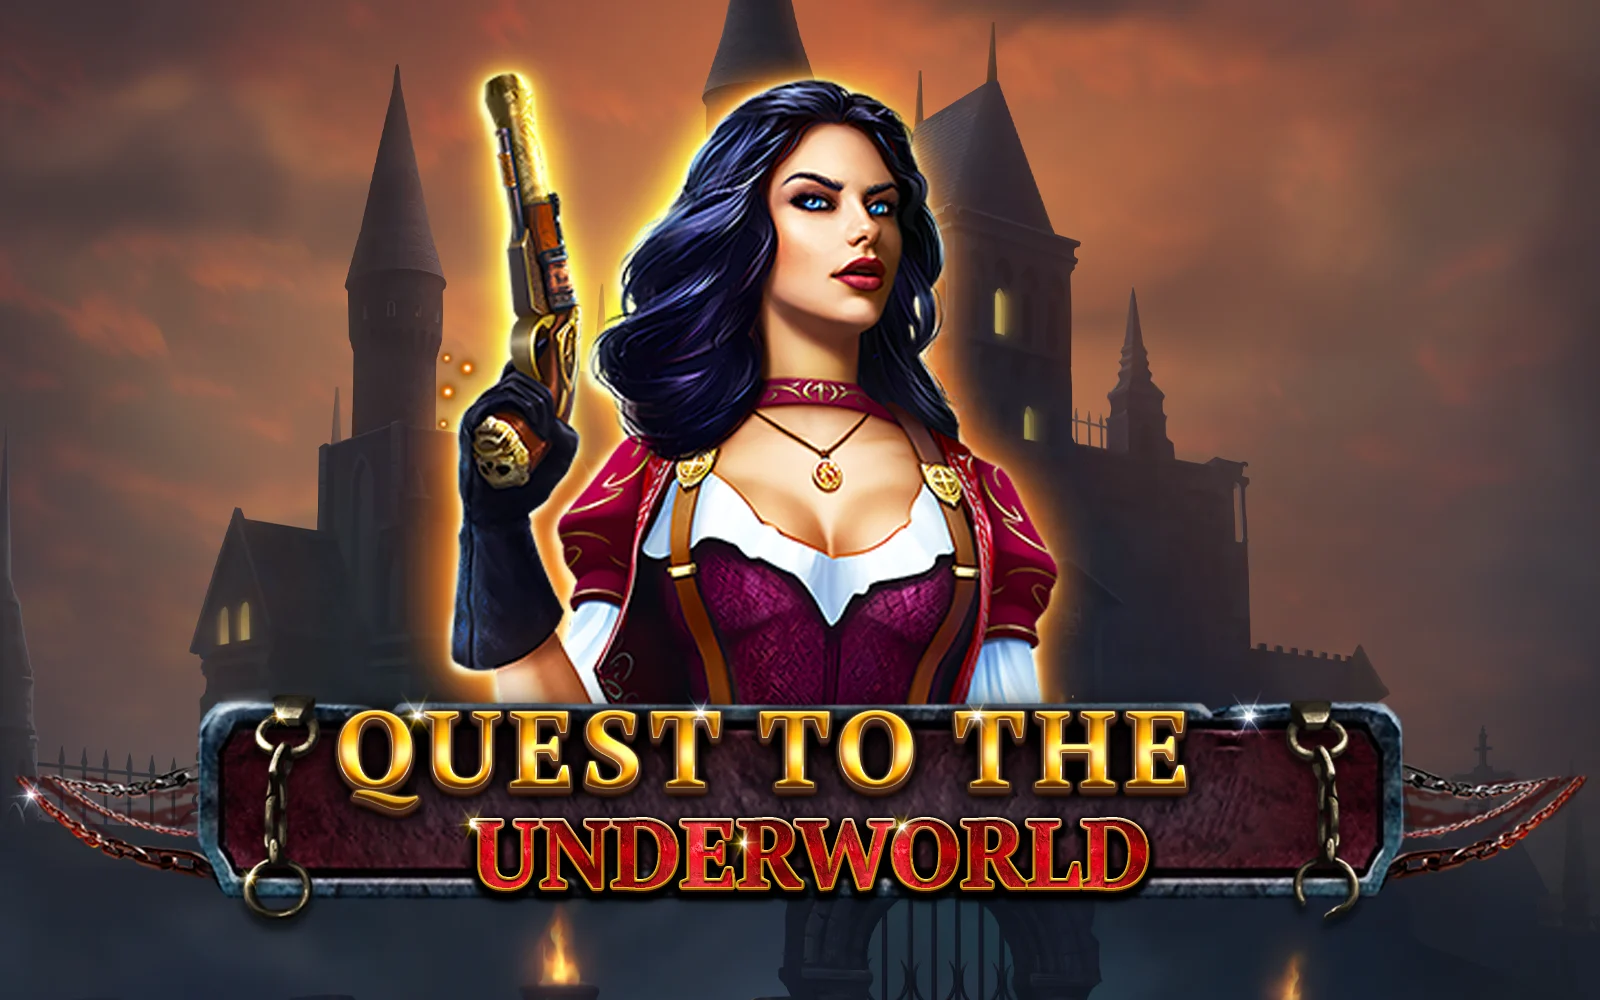 Spielen Sie Quest to the Underworld auf Starcasino.be-Online-Casino